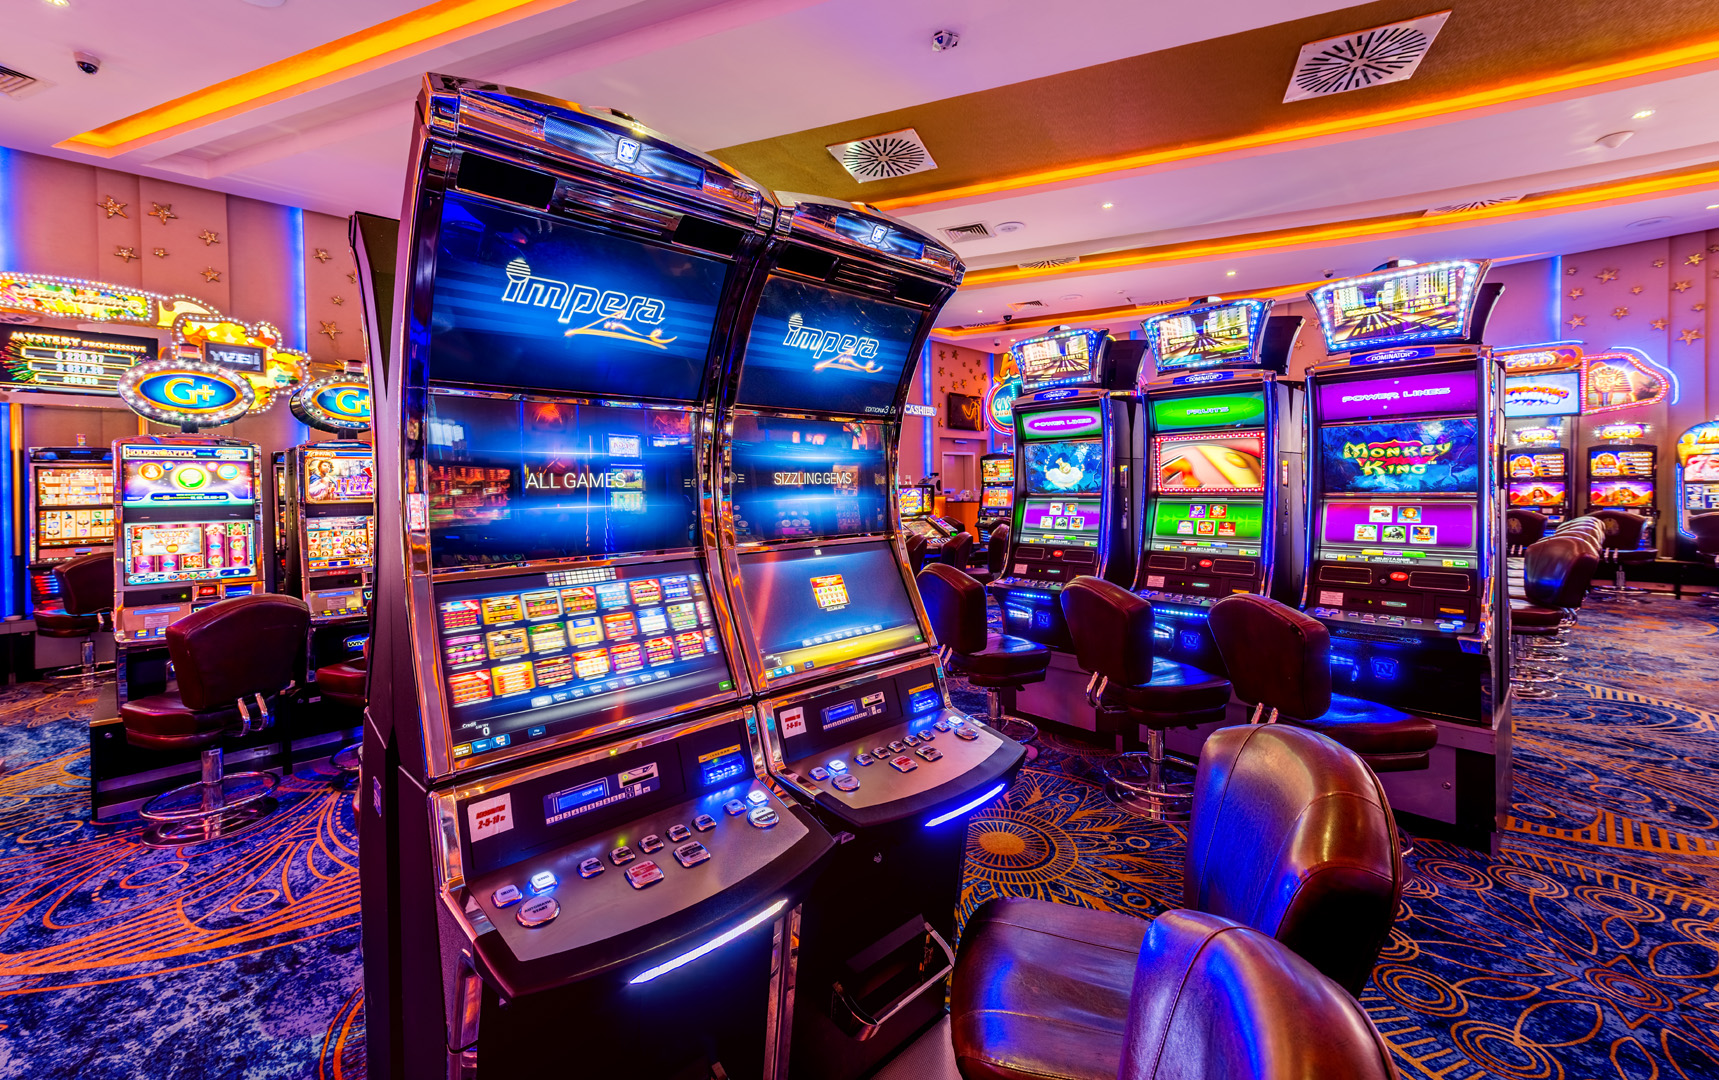 Сайт игровых автоматов slots casino. Игровые автоматы казино Белладжио. Казино игровые автоматы IRMS/1488/59101. Игровой зал. Зал игровых автоматов.